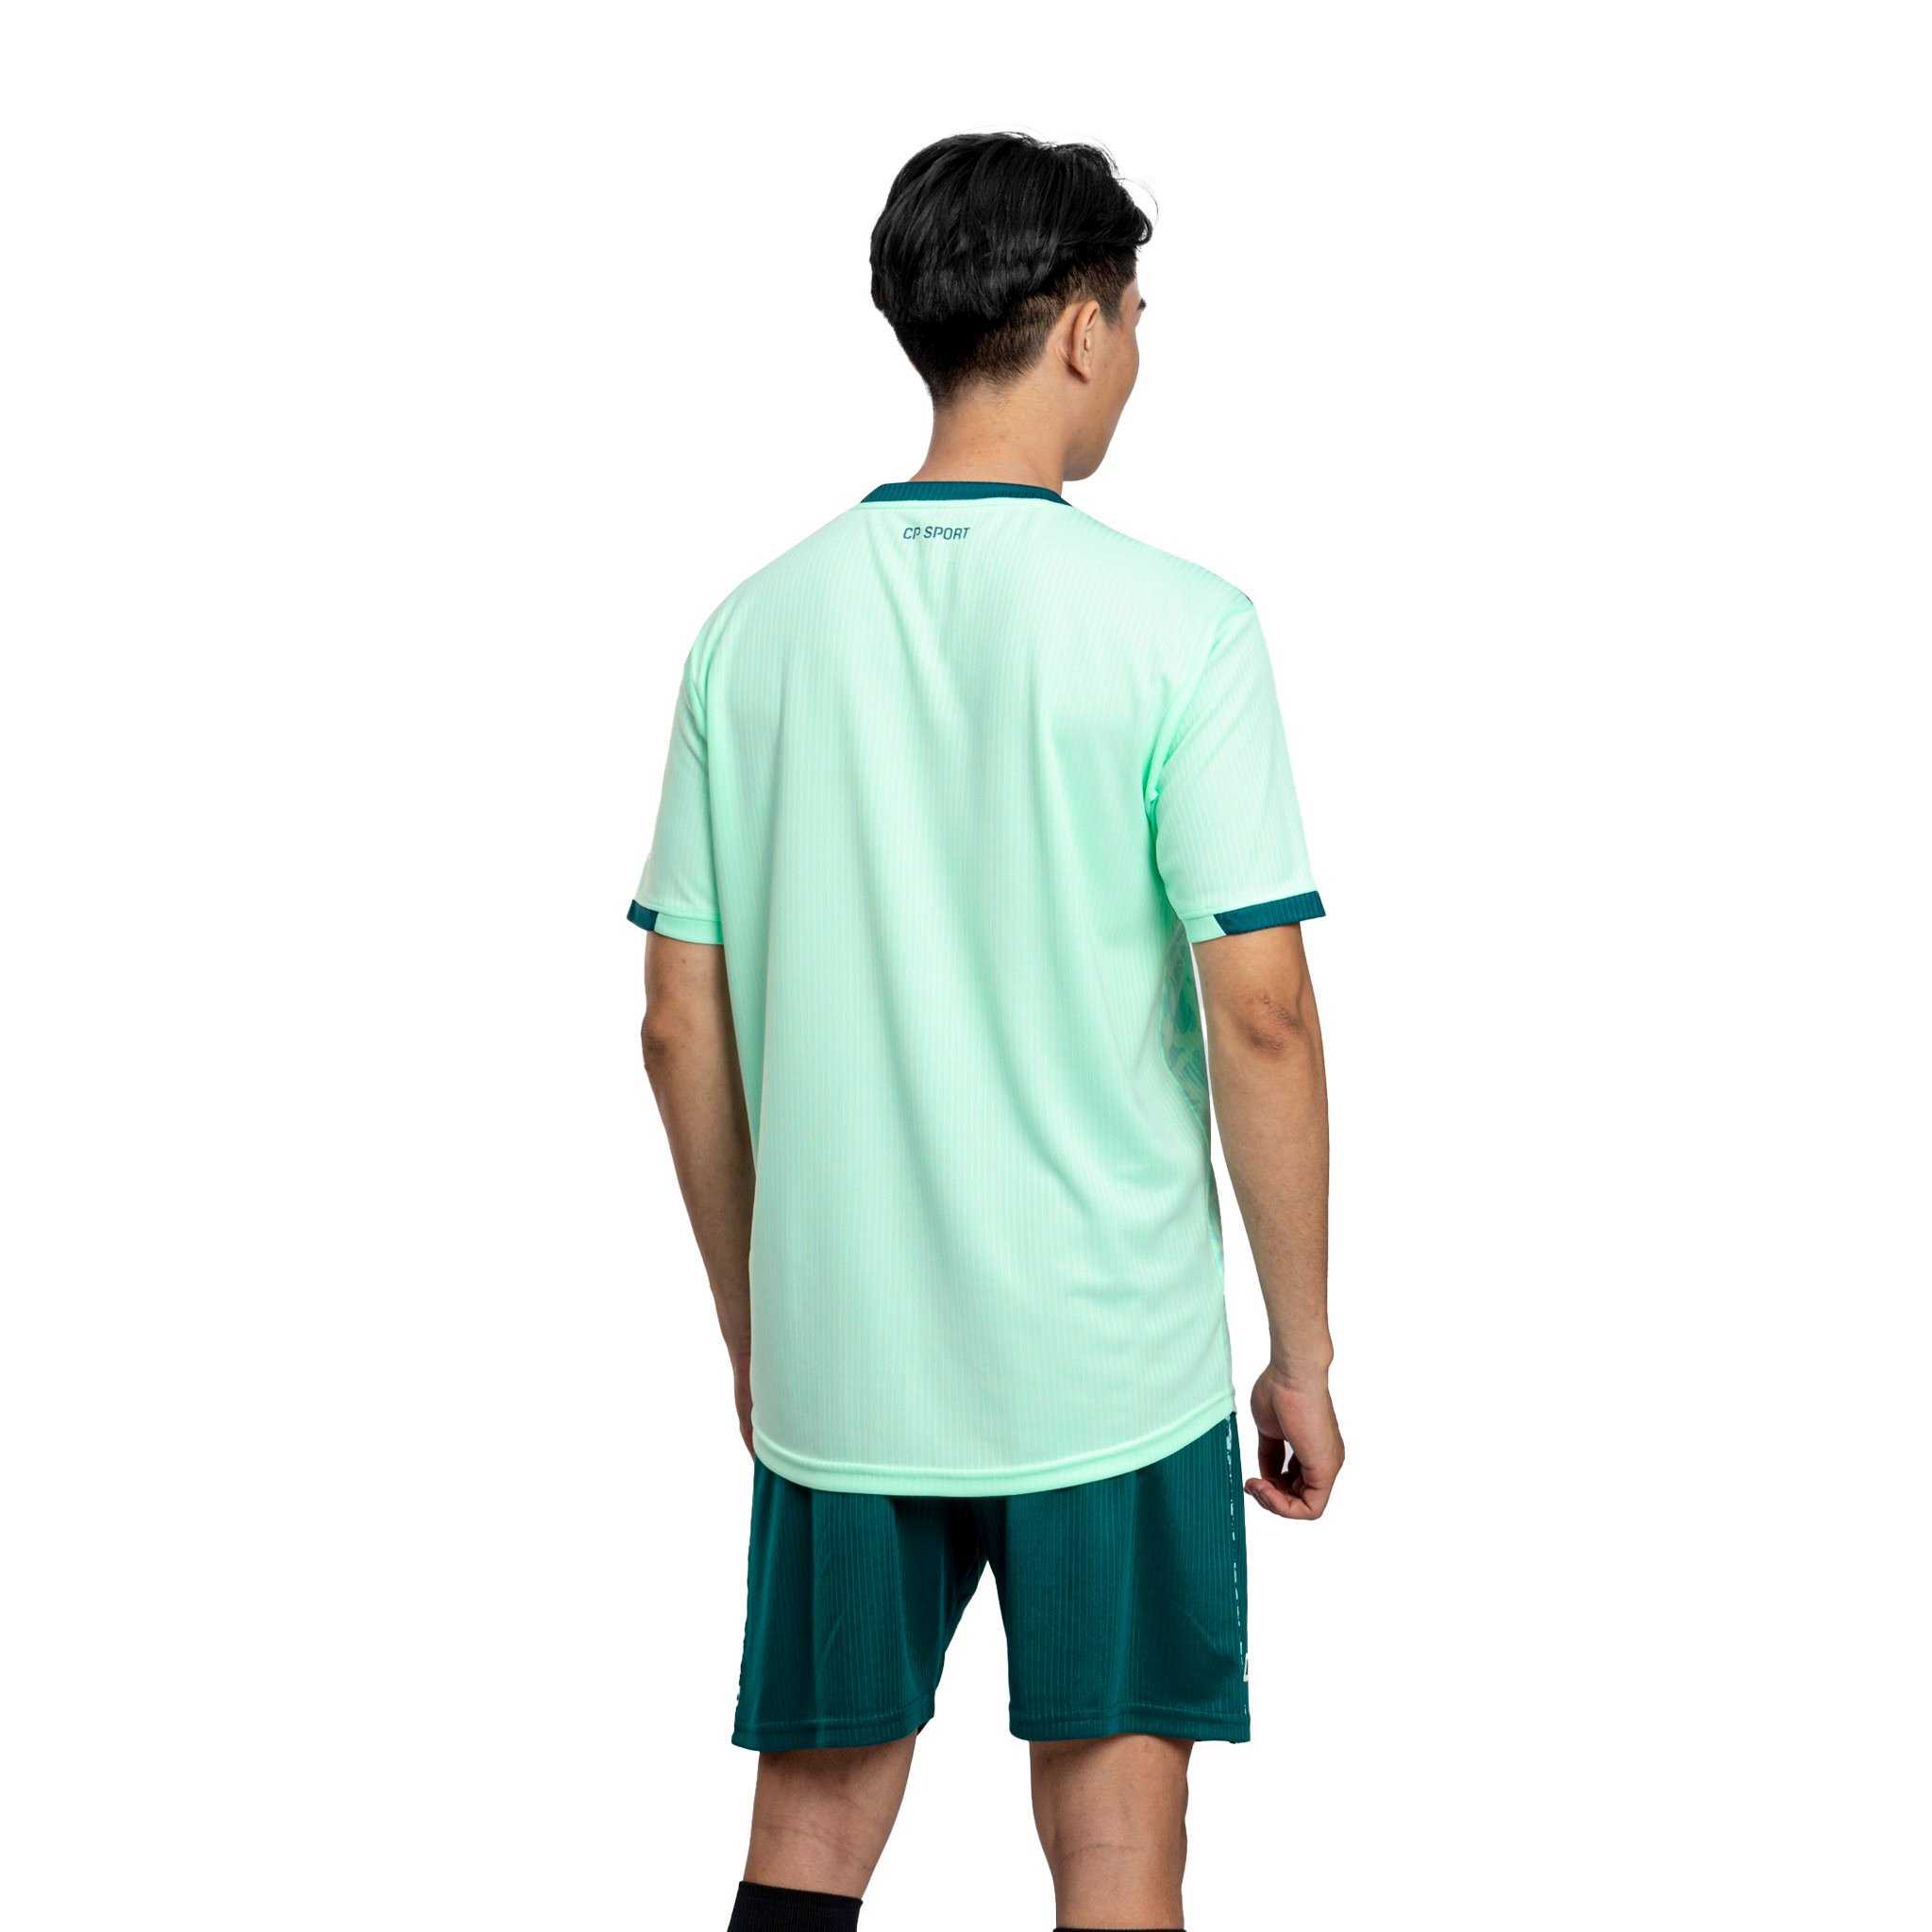 Bộ quần áo bóng đá phủi thiết kế áo đá banh chính hãng CP Sport Ryder nhiều màu xanh biển